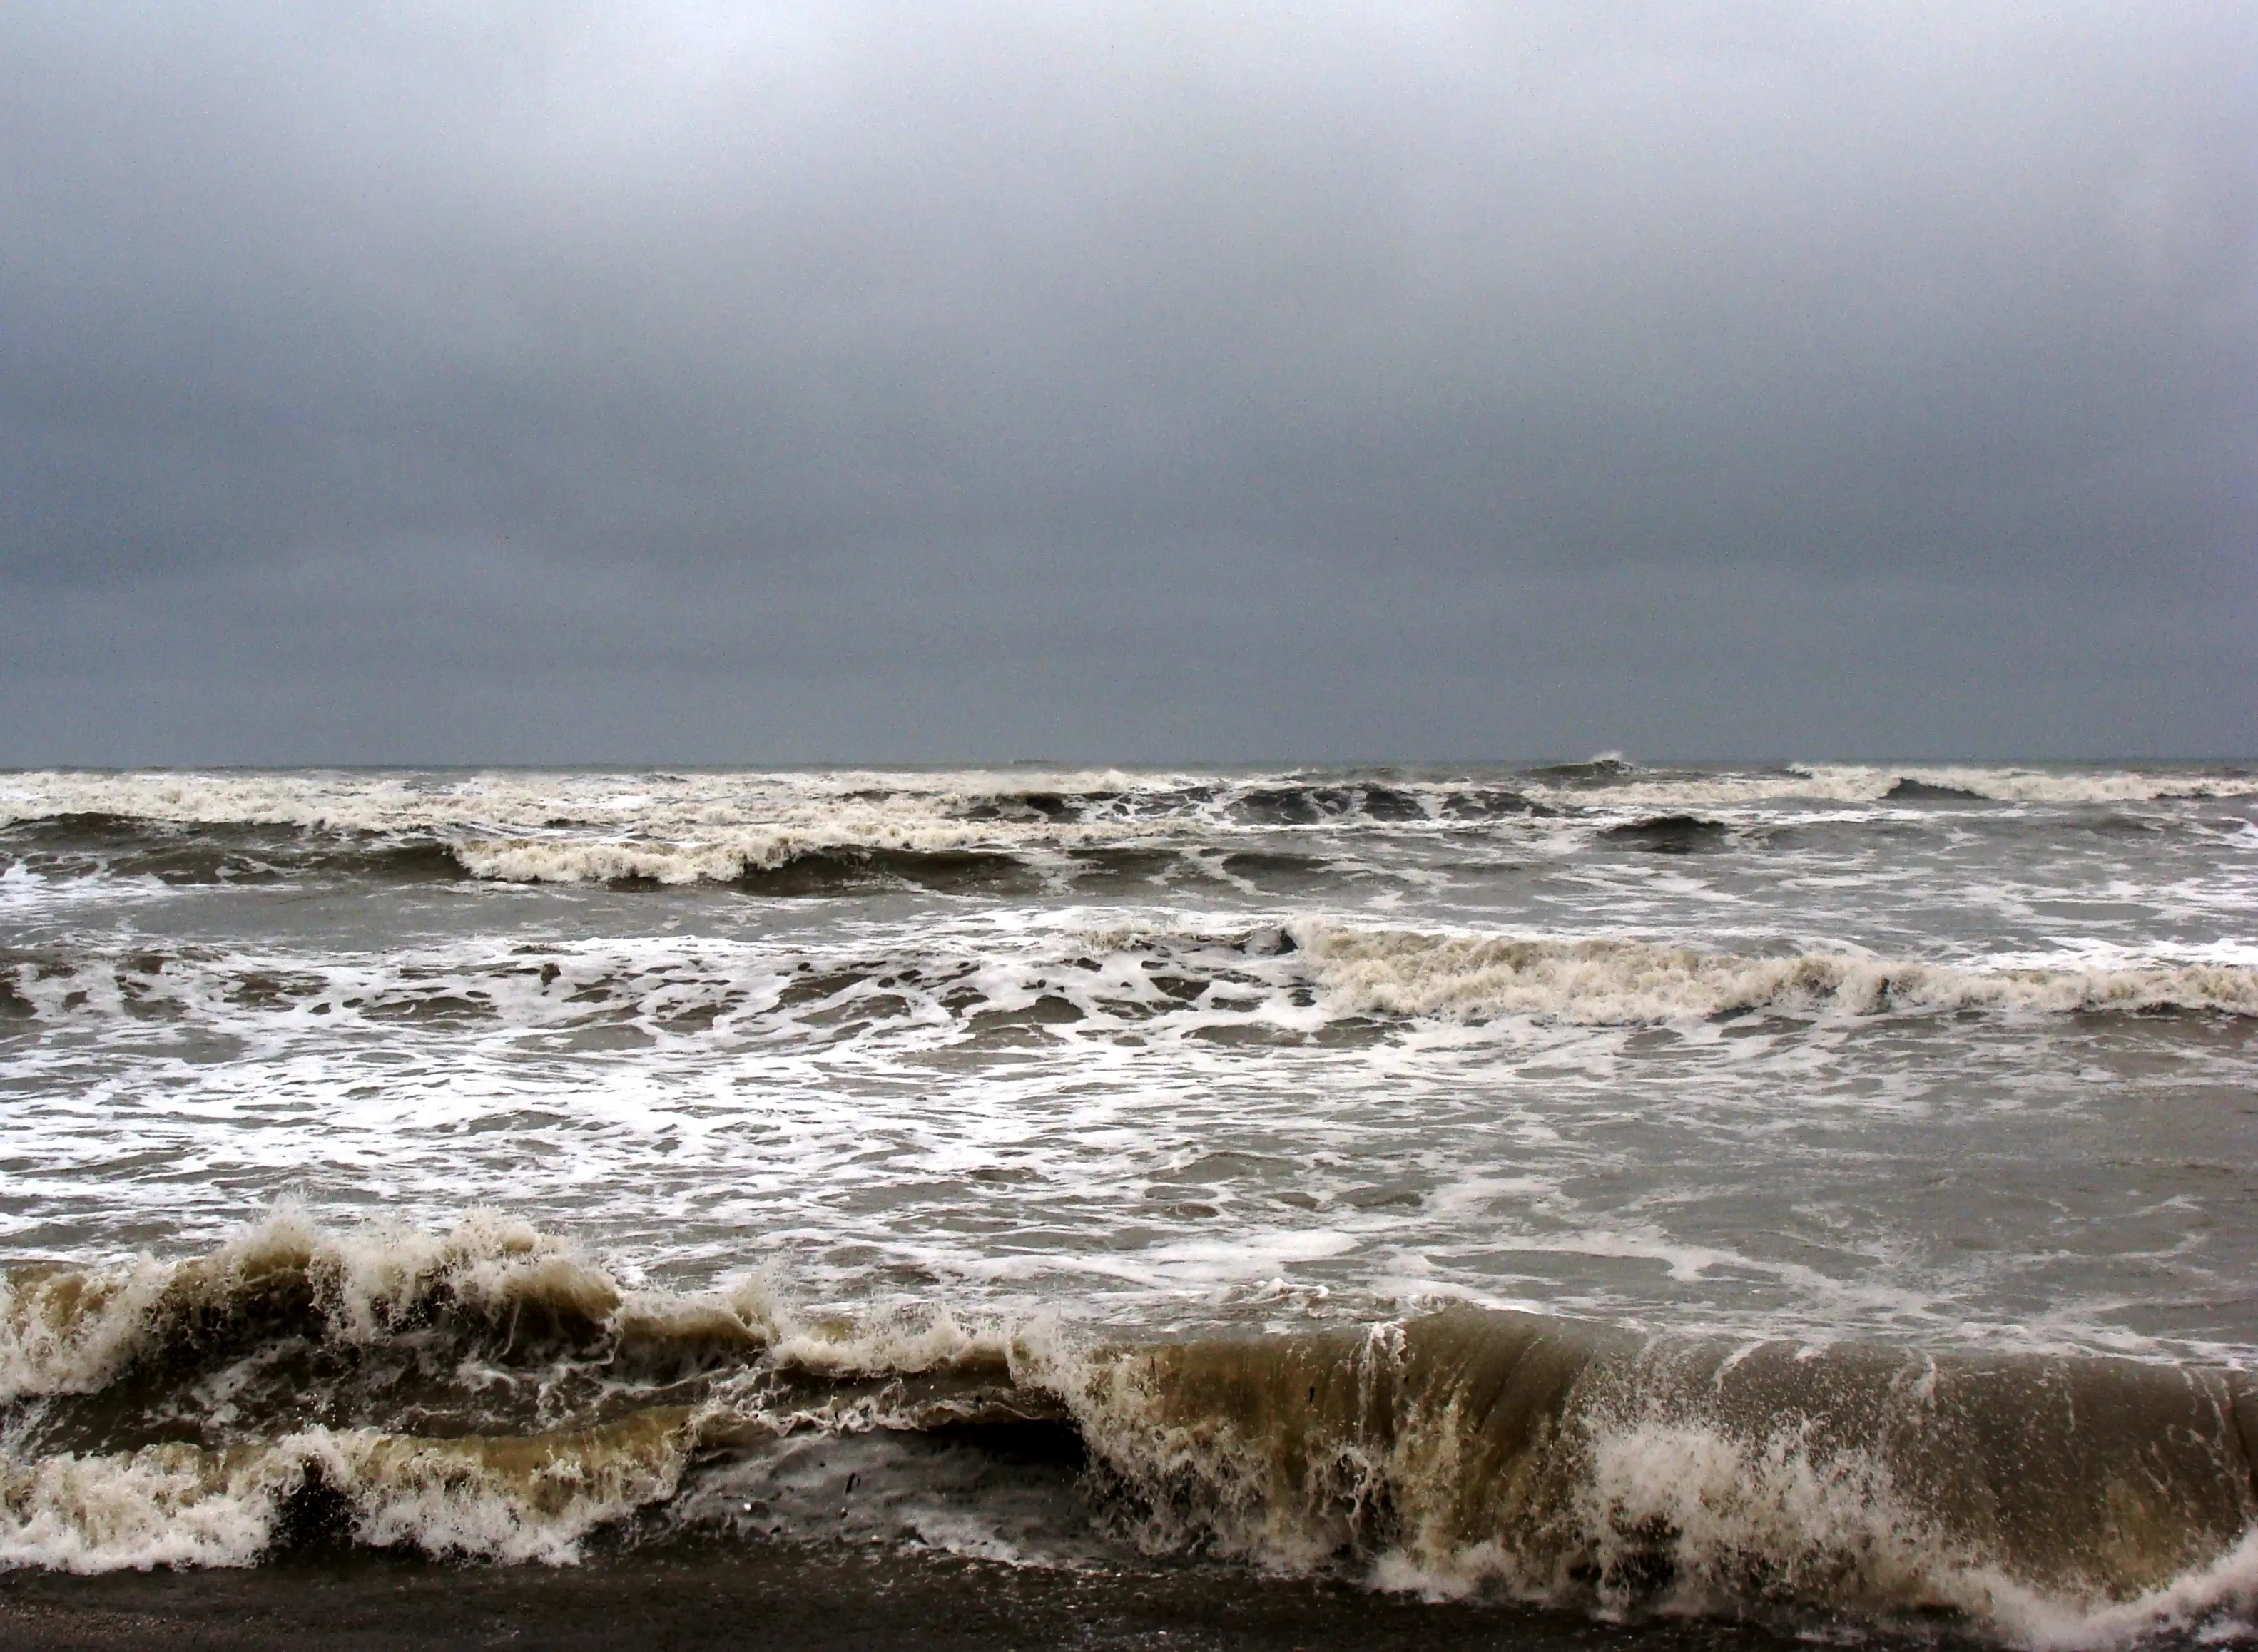  آب های شمال خلیج فارس مواج و توفانی است 